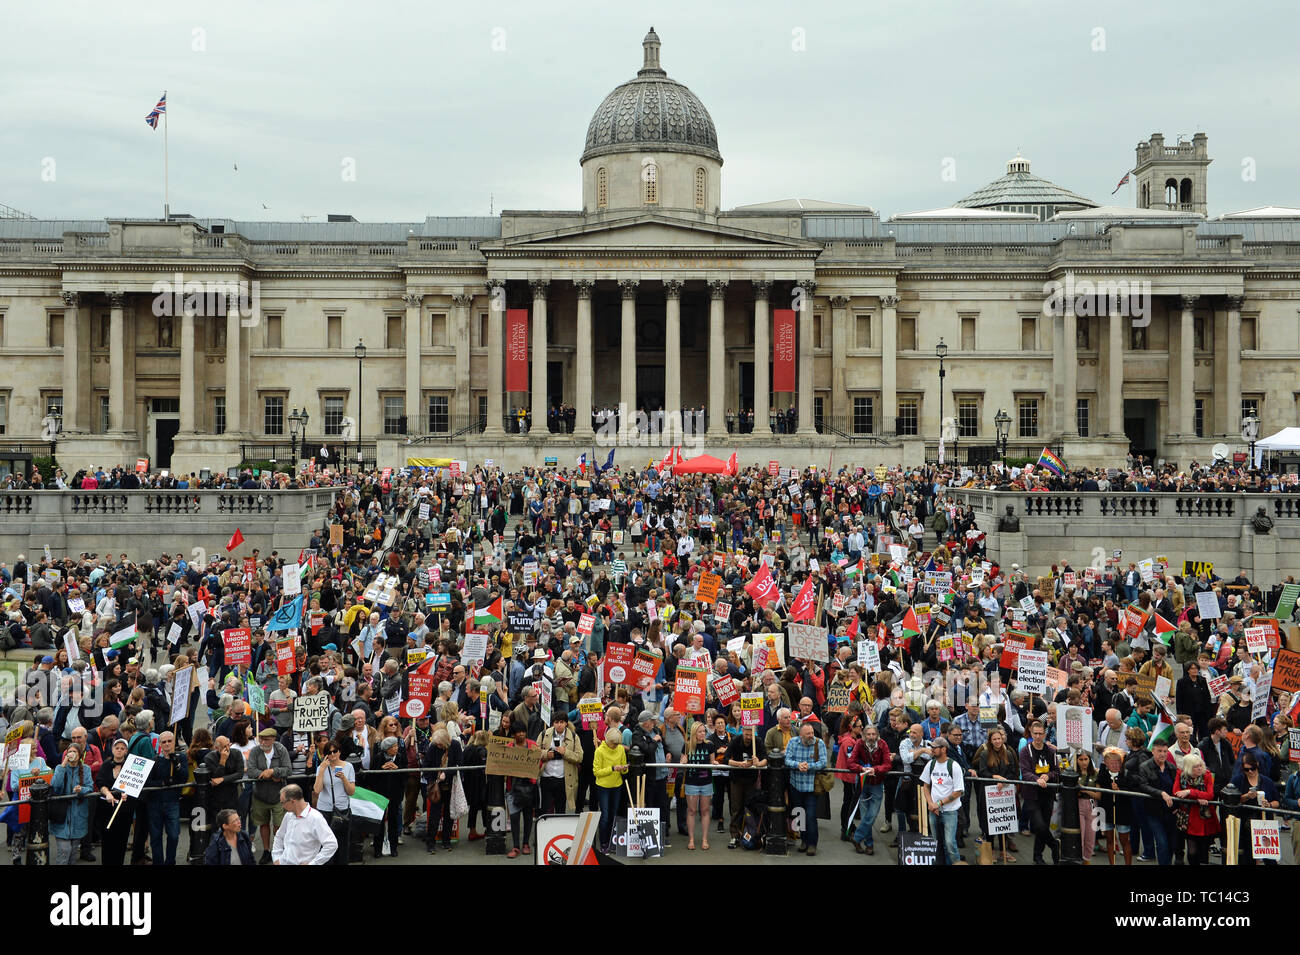 Les manifestants se rassemblent à Trafalgar Square, Londres, le deuxième jour de la visite d'Etat au Royaume-Uni par le président américain, Donald Trump. Banque D'Images